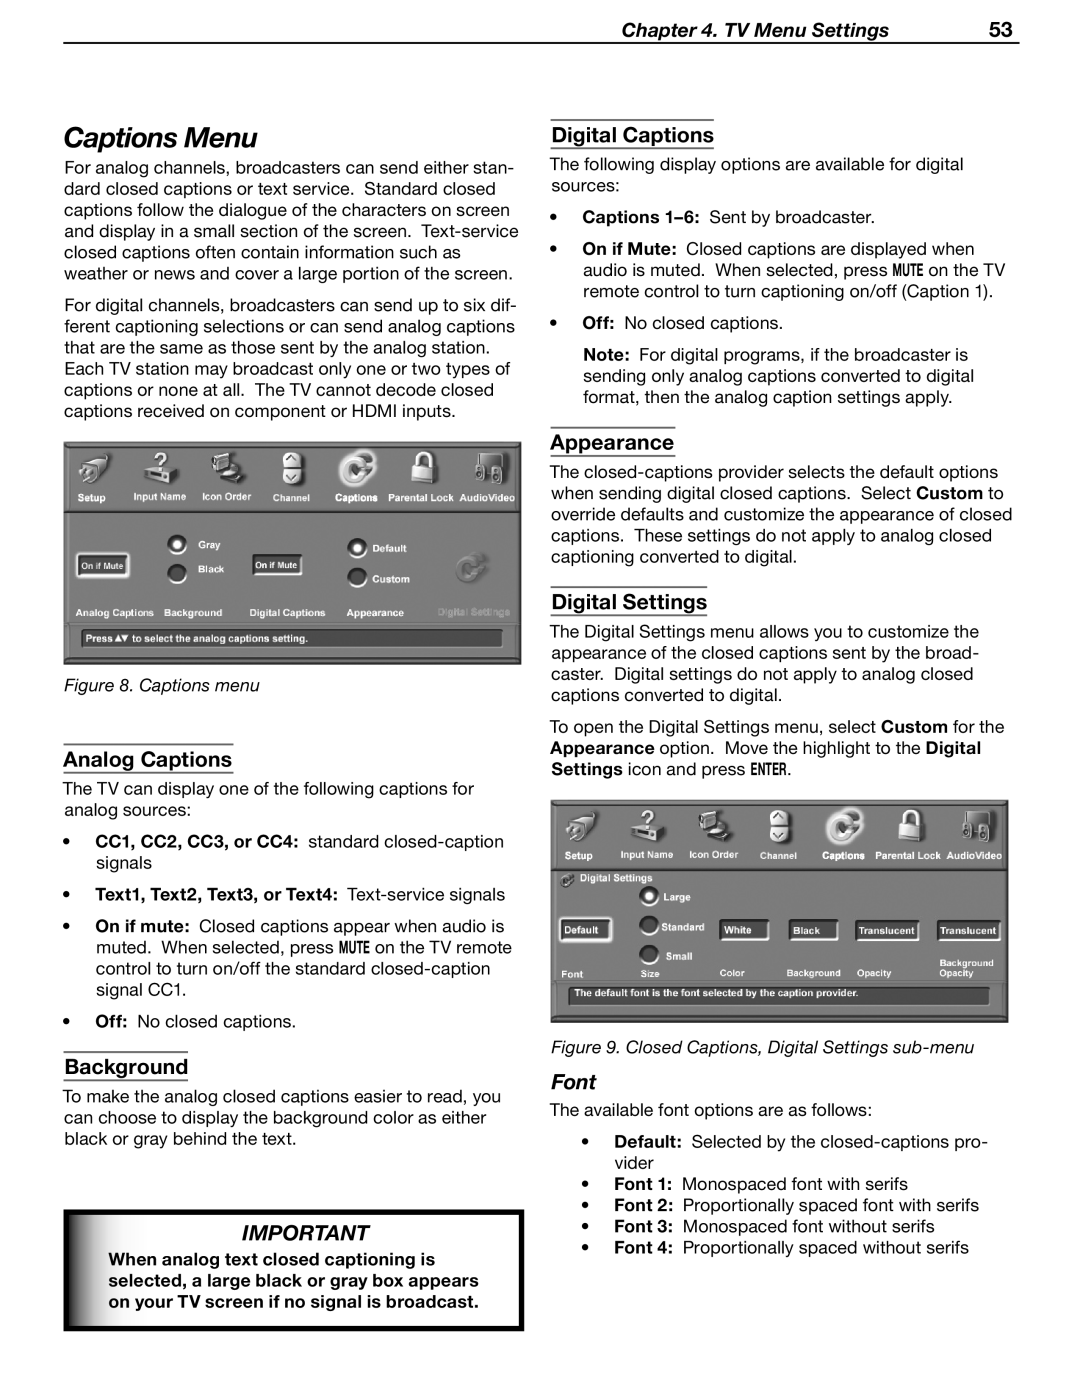 Mitsubishi Electronics LT-37131 Captions Menu, Analog Captions, Background, Digital Captions, Appearance, Digital Settings 